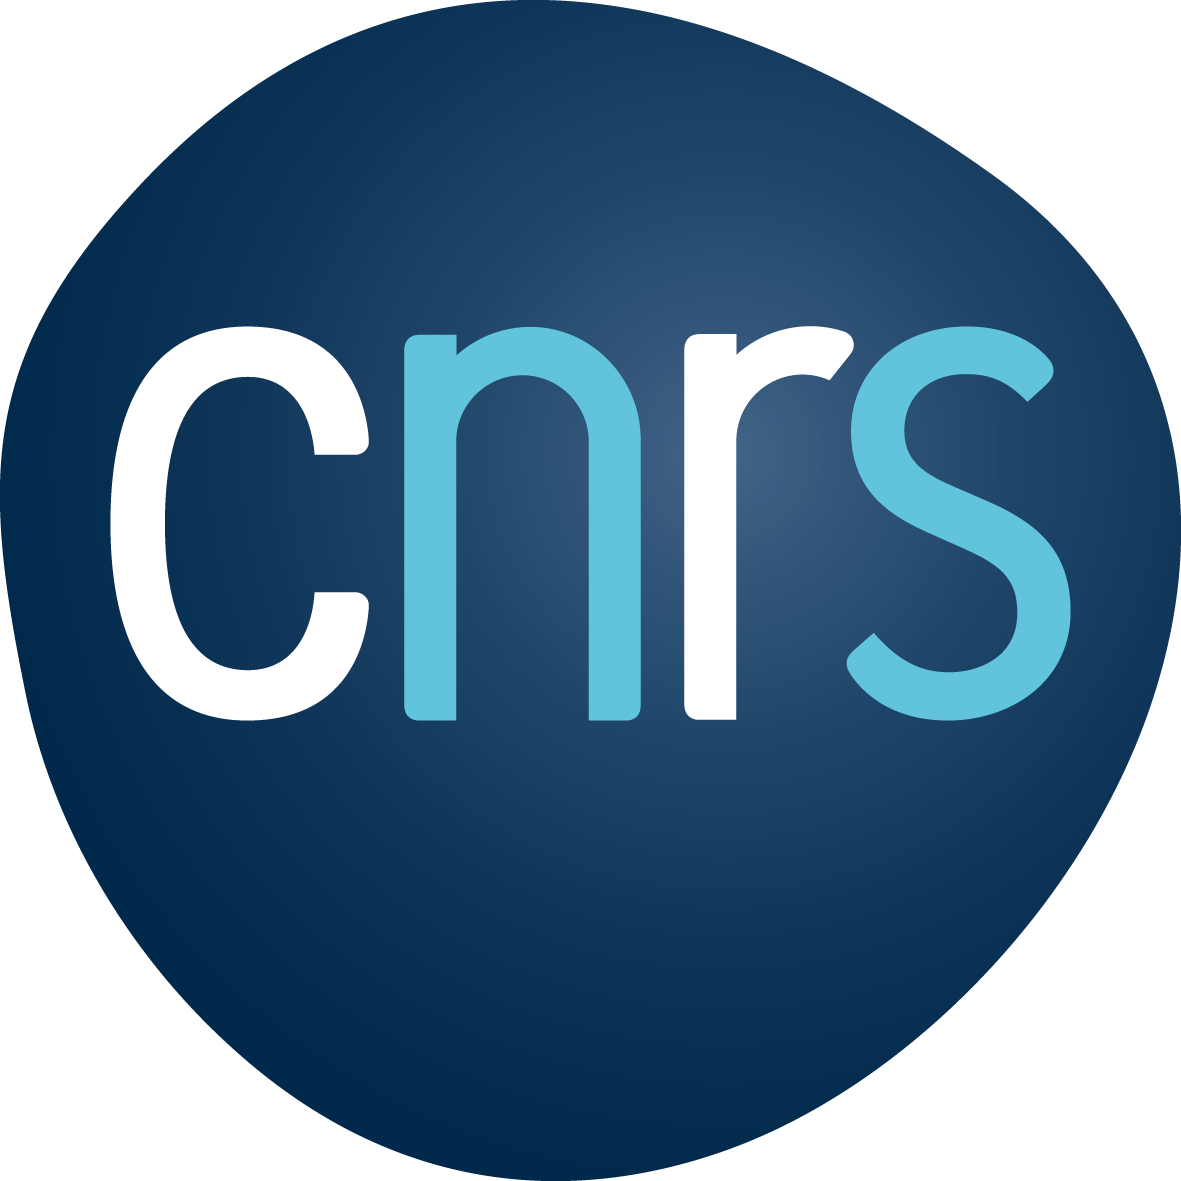 utils/logos/CNRS.png